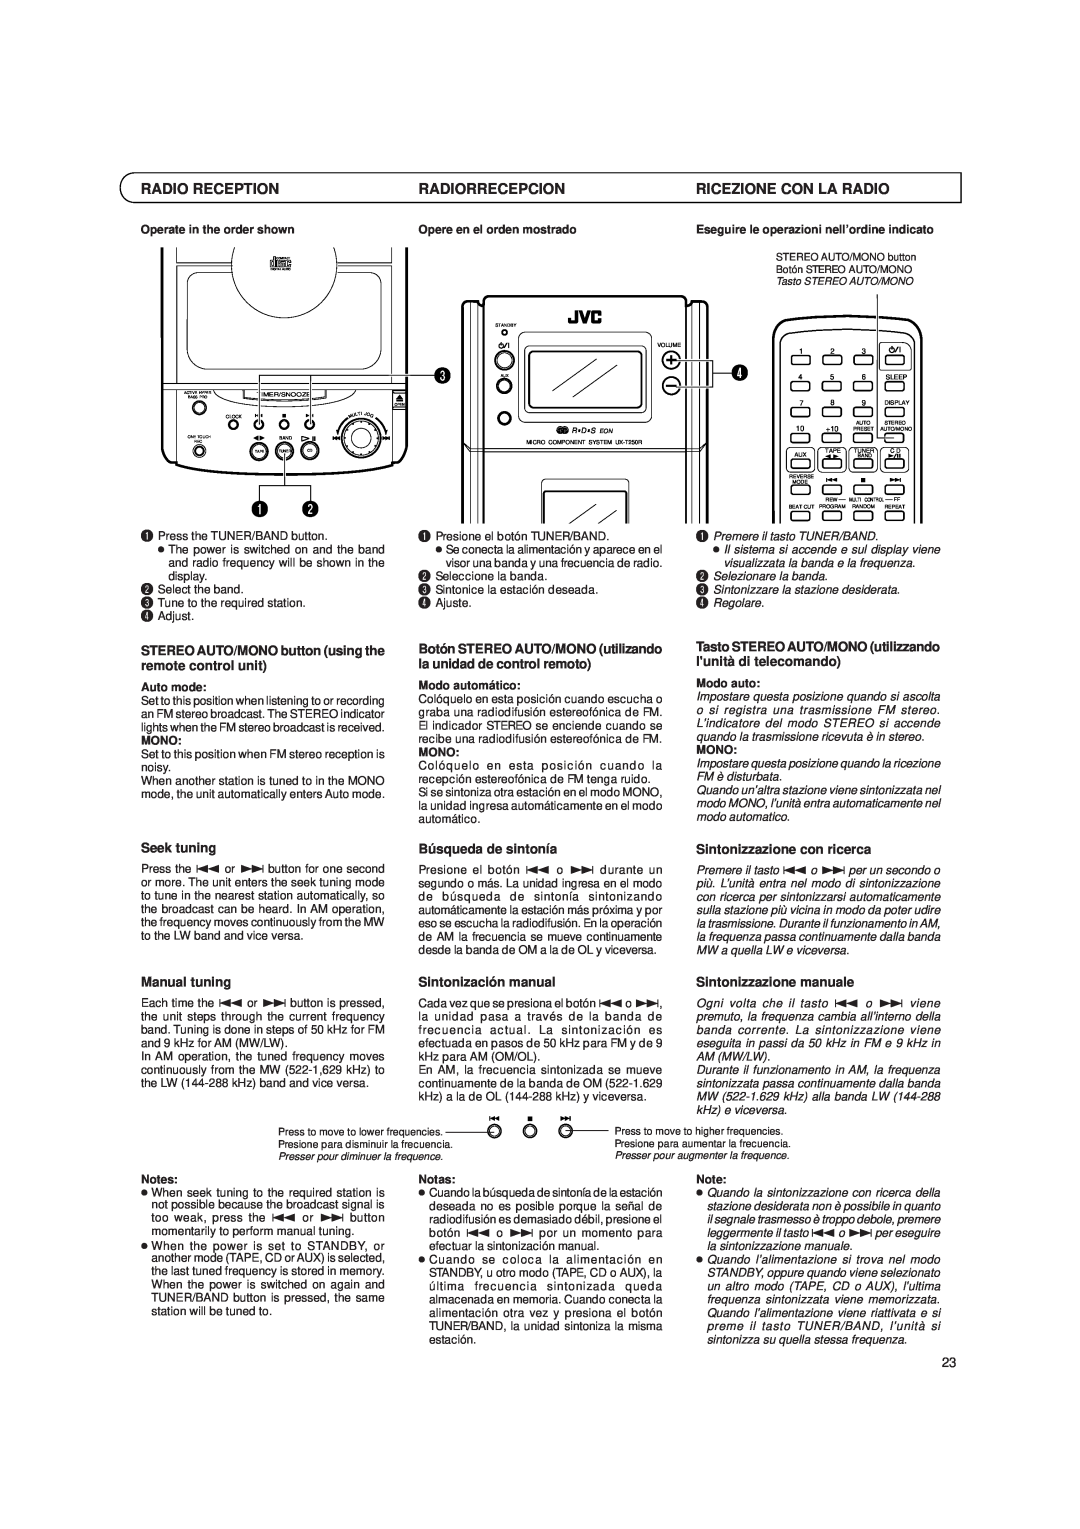 JVC UX-T250R Seek tuning, Búsqueda de sintonía, Sintonizzazione con ricerca, Manual tuning, Sintonización manual 